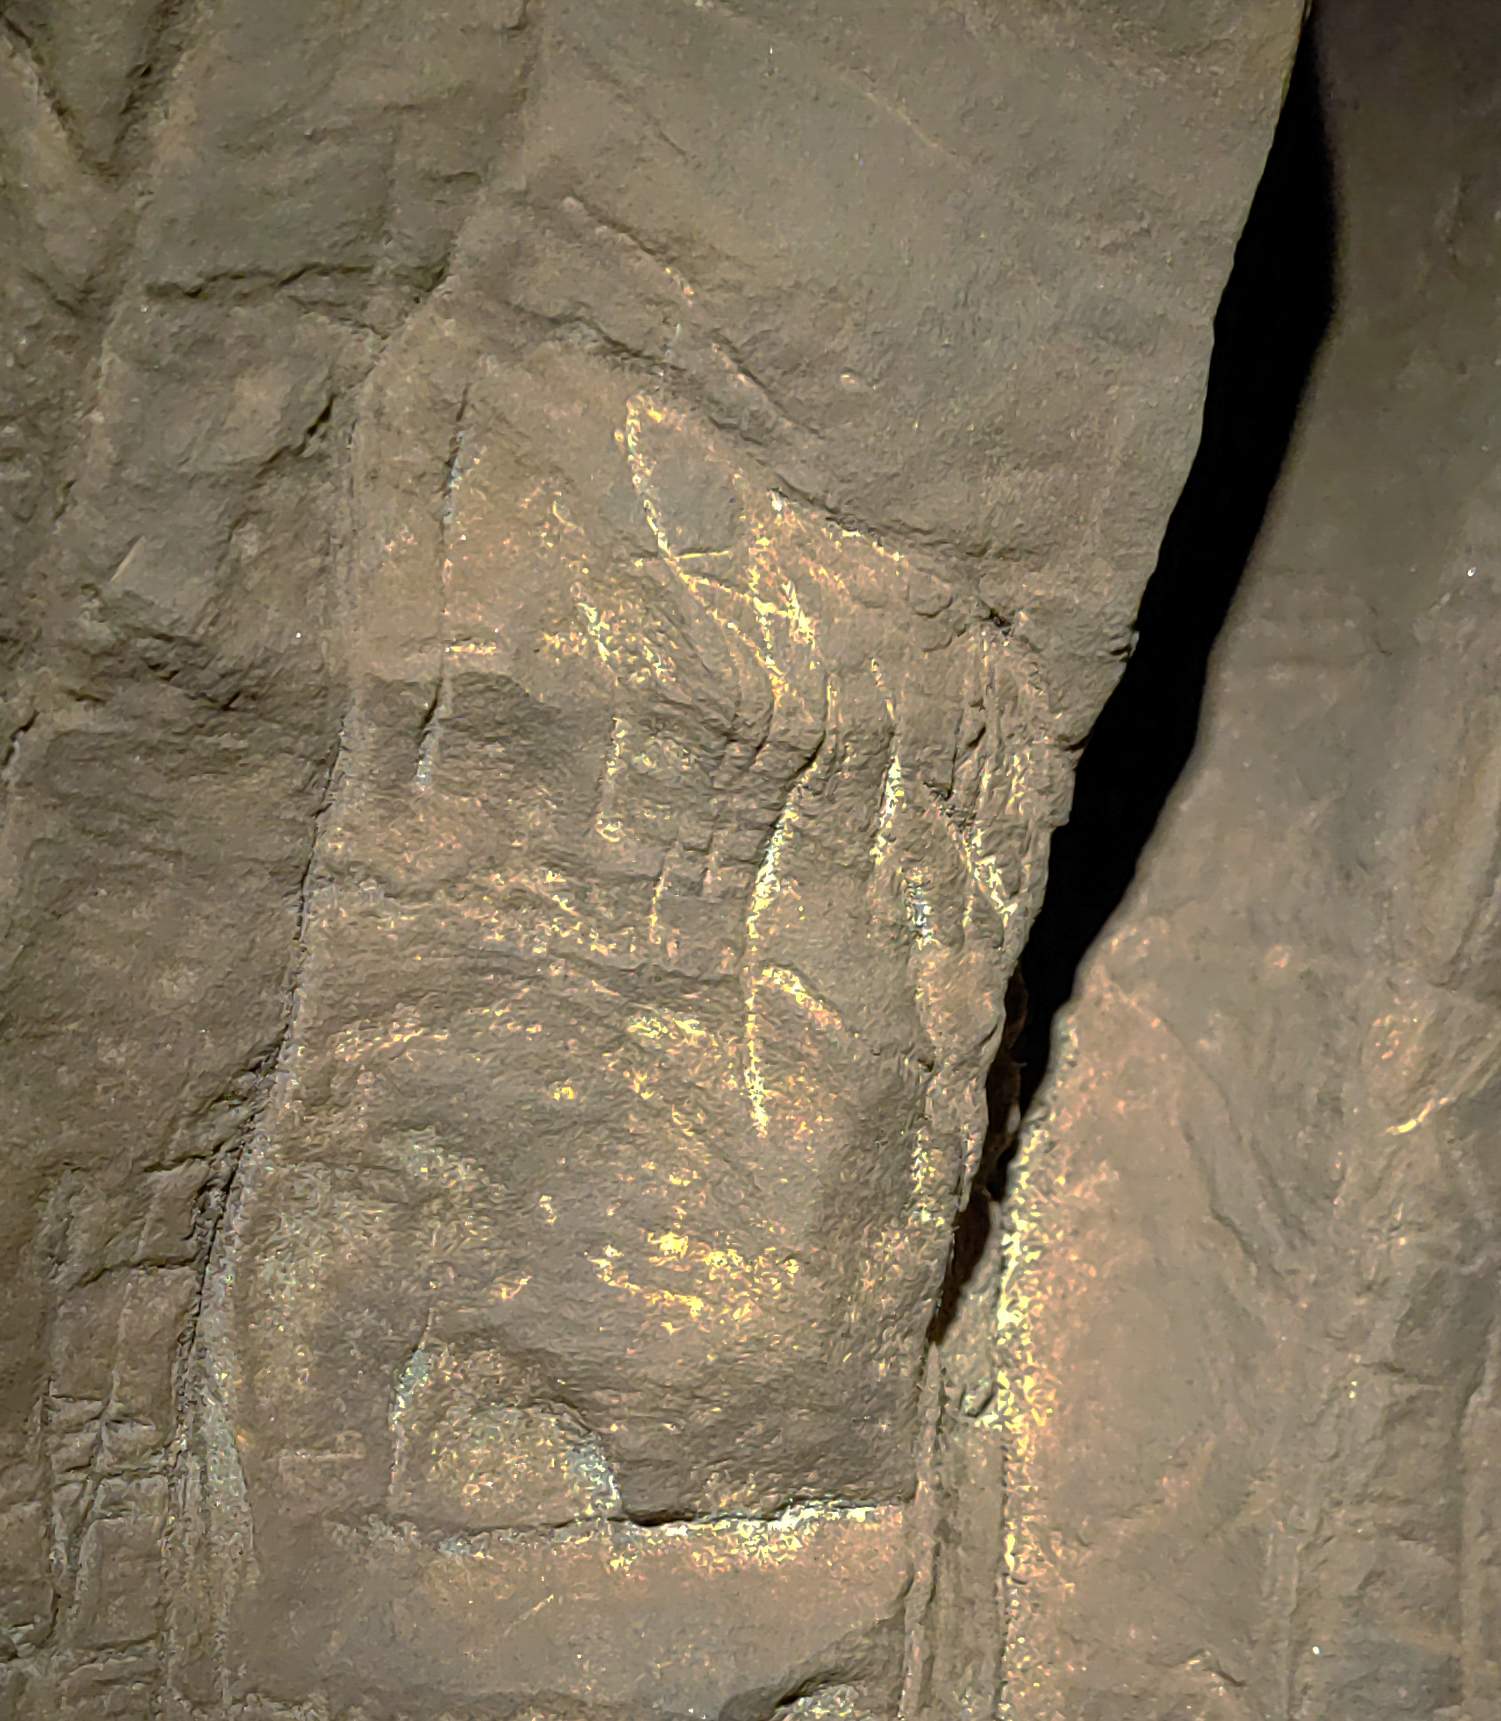 Kalno prieškambario laidojimo kameroje rasta graviūrų, pavyzdžiui, apversto kryžiaus formos. Taip pat ant paviršiaus yra naudojama medžiaga, skirta negeometriniams vaizdams paryškinti esant silpnam apšvietimui, nors tai dar nebuvo ištirta.